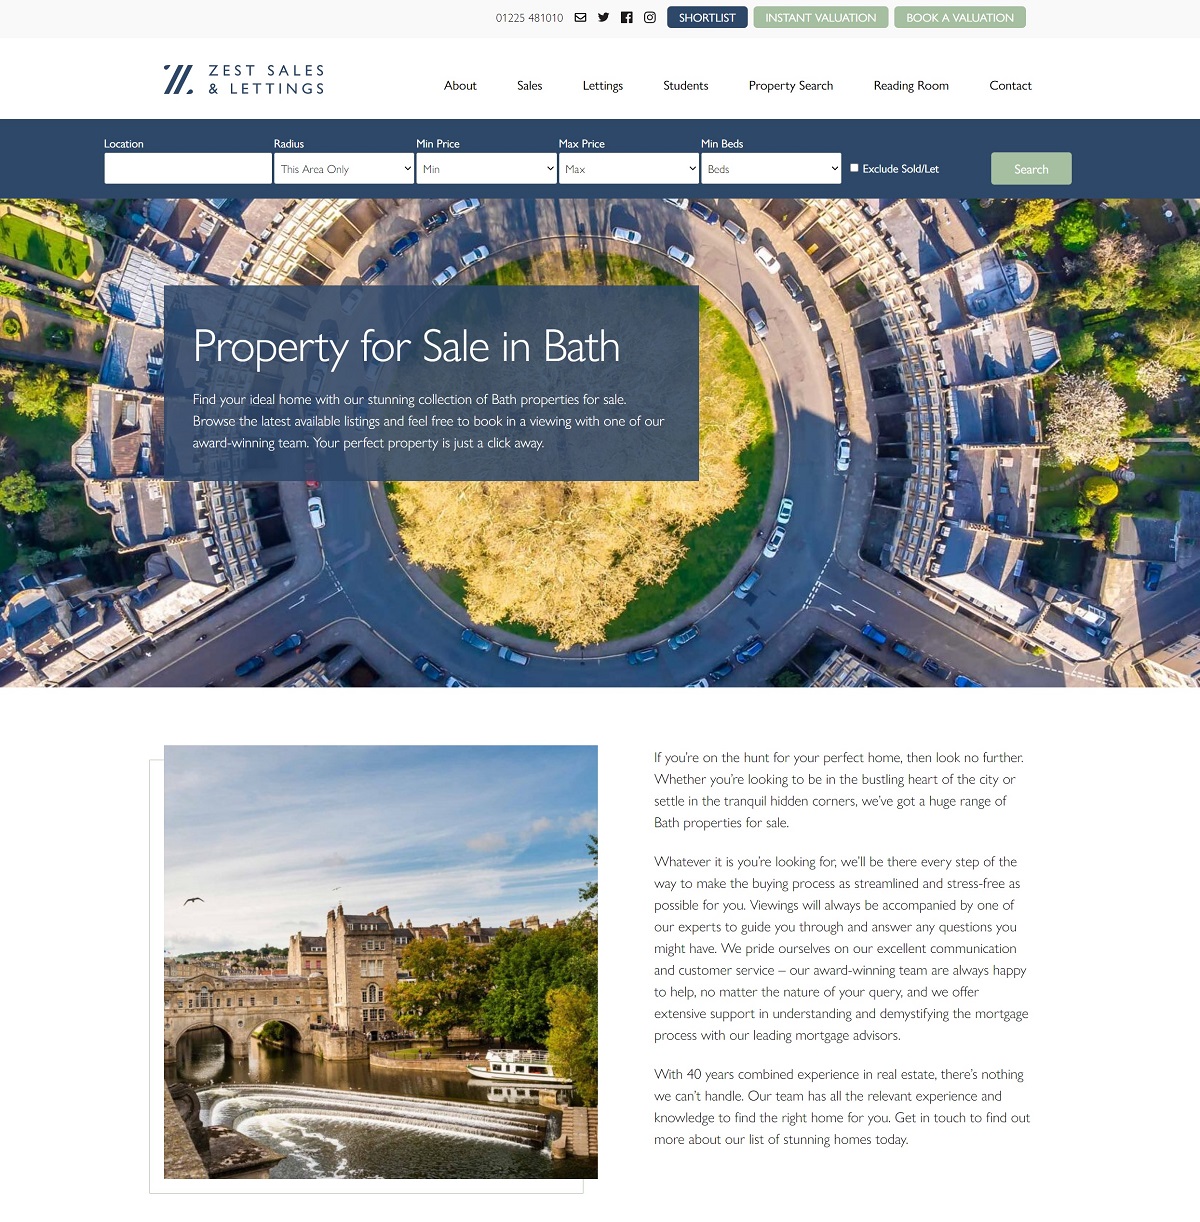 Zest Properties in Bath webpage